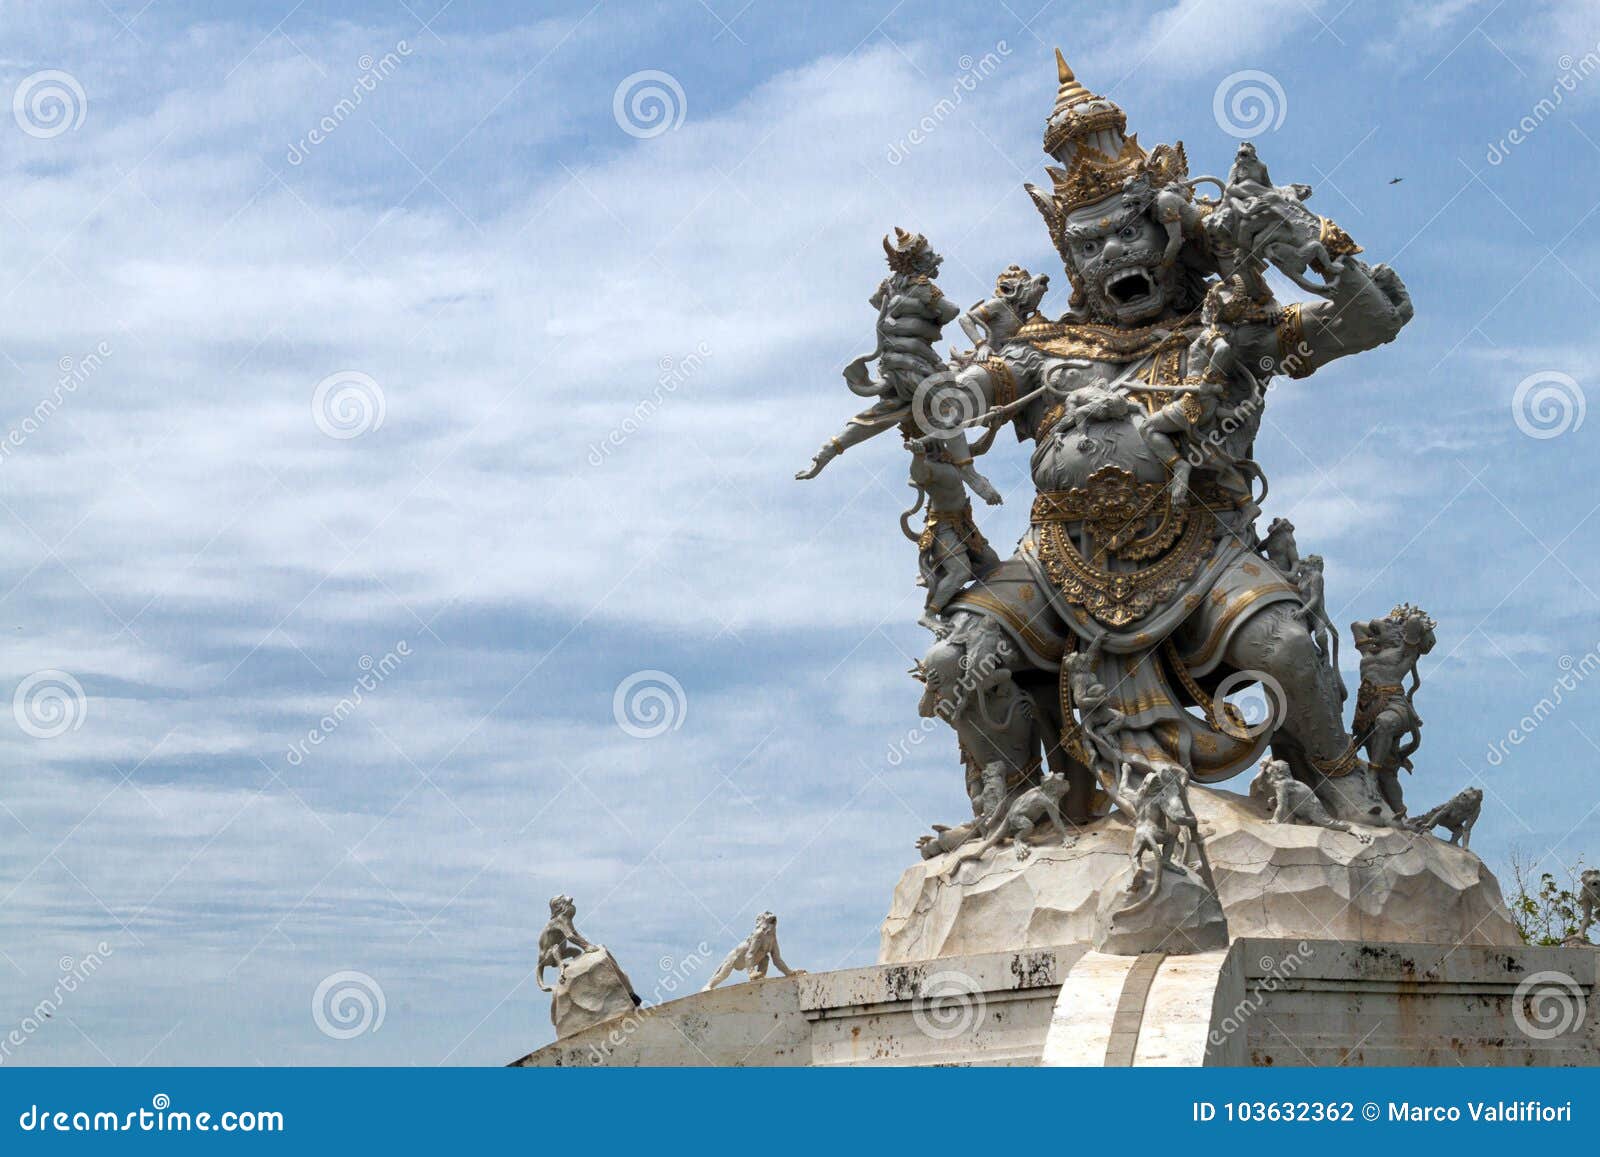 kumbakarna laga statue in pura uluwatu temple